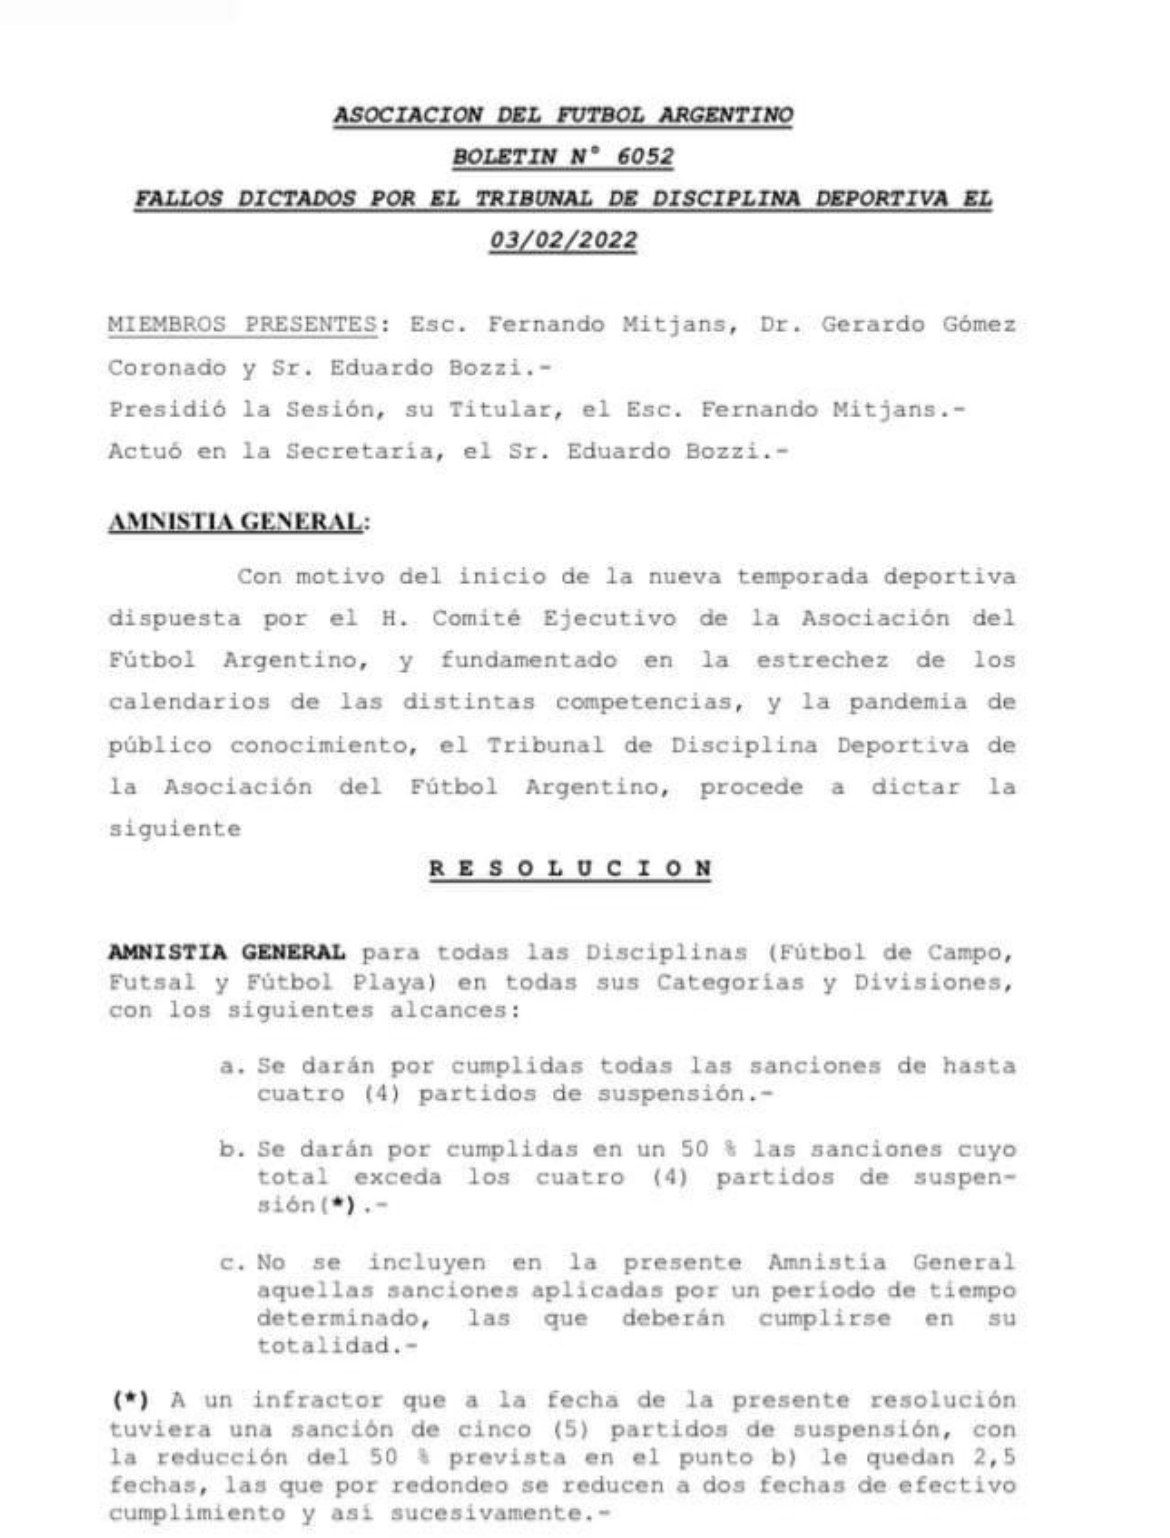 La resolución de AFA que habilita a Insaurralde a jugar con Independiente